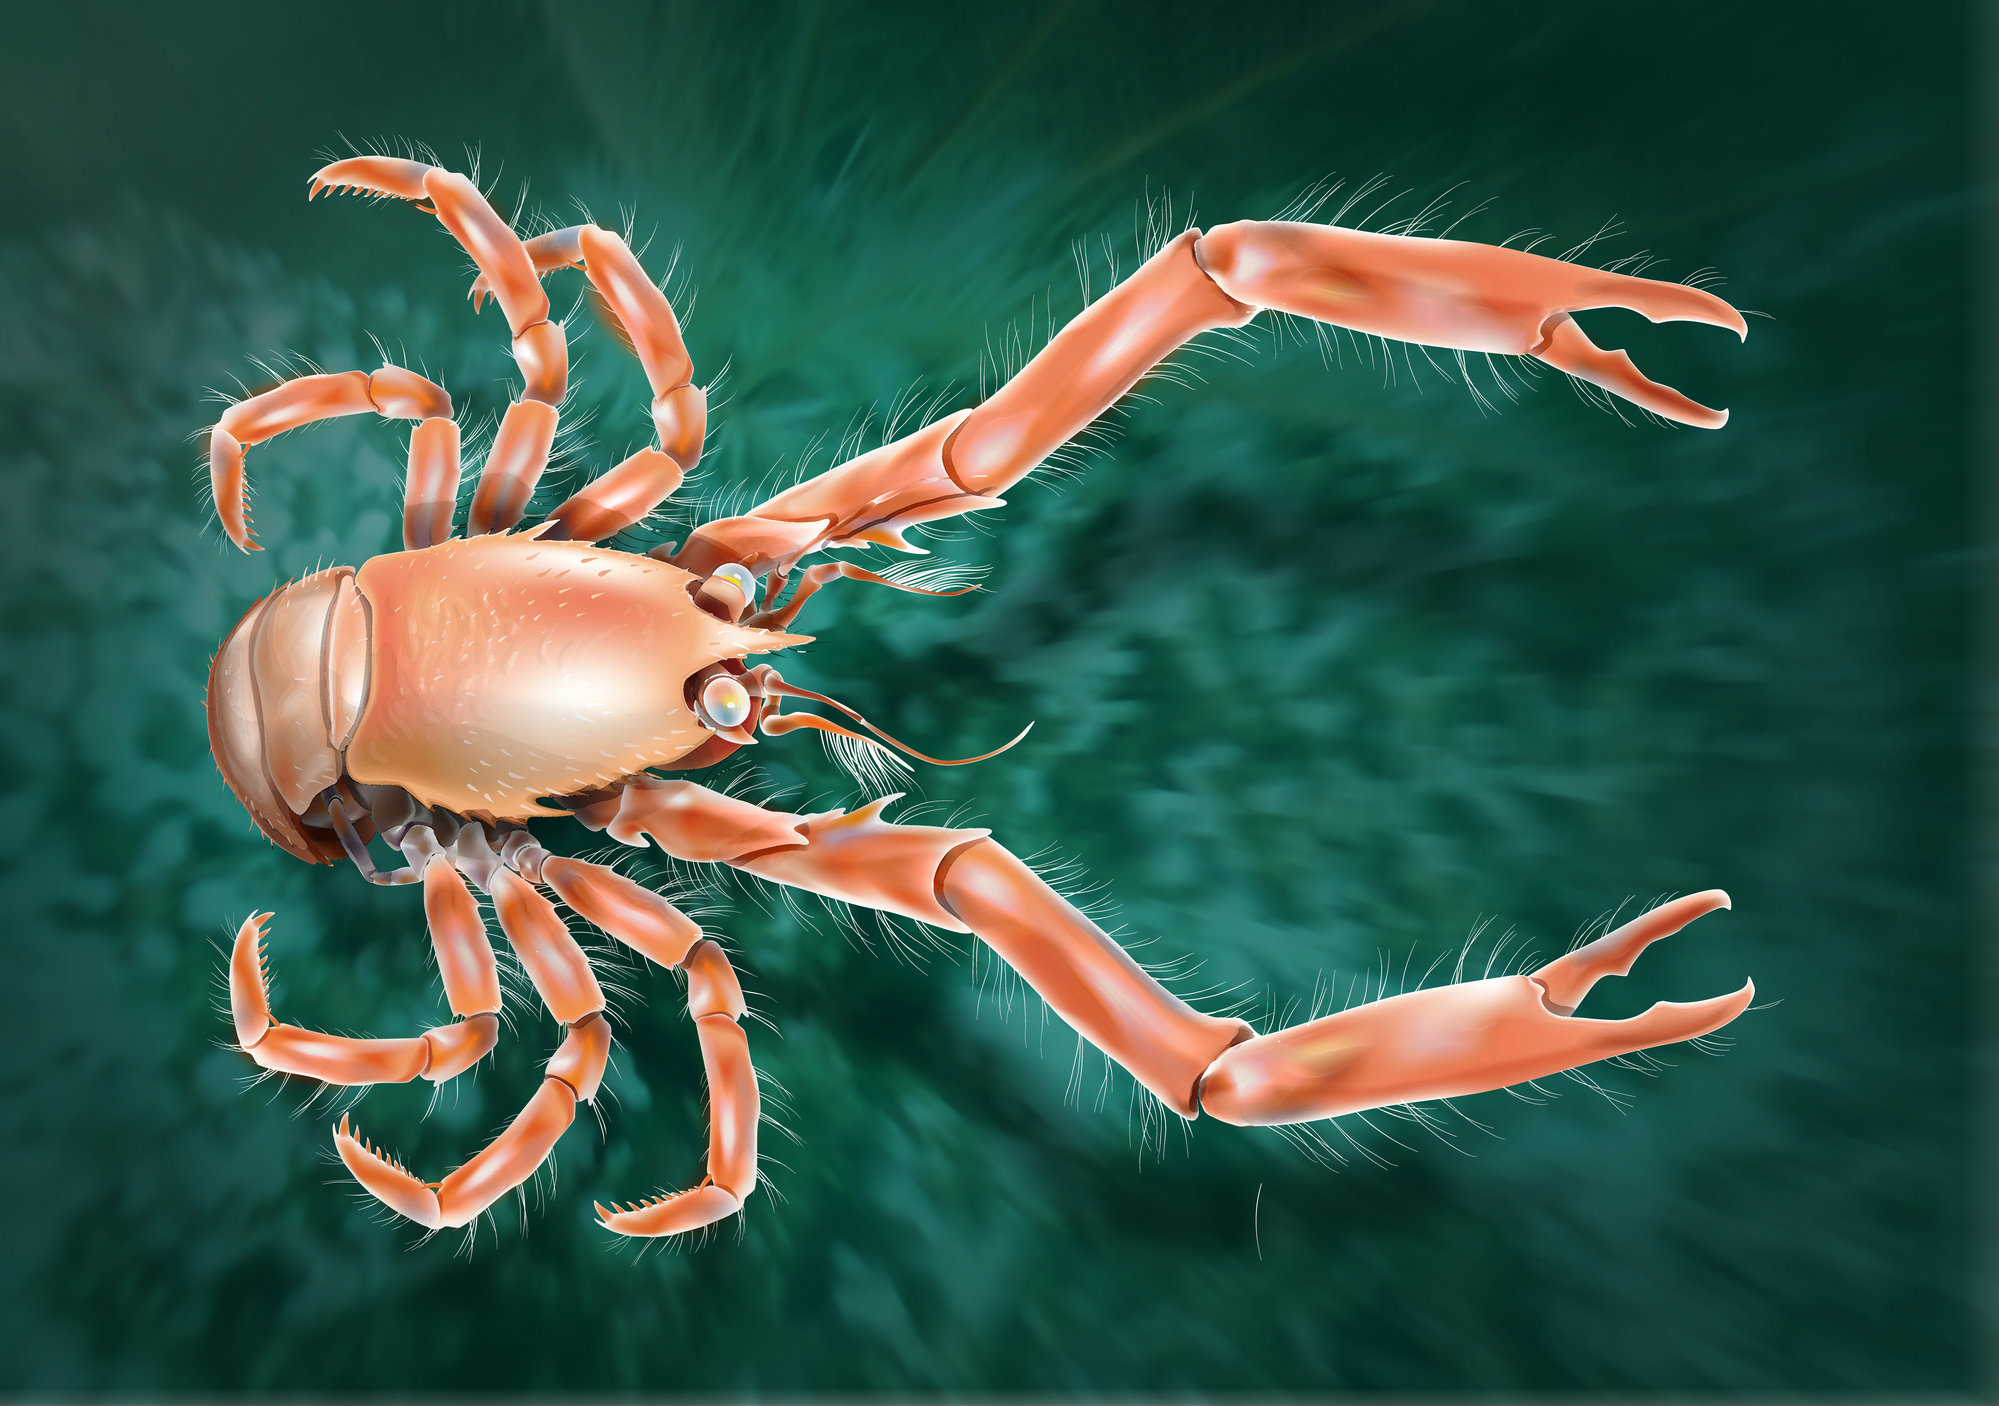 Descubren una nueva especie de cangrejo en el fondo de las aguas marinas gallegas